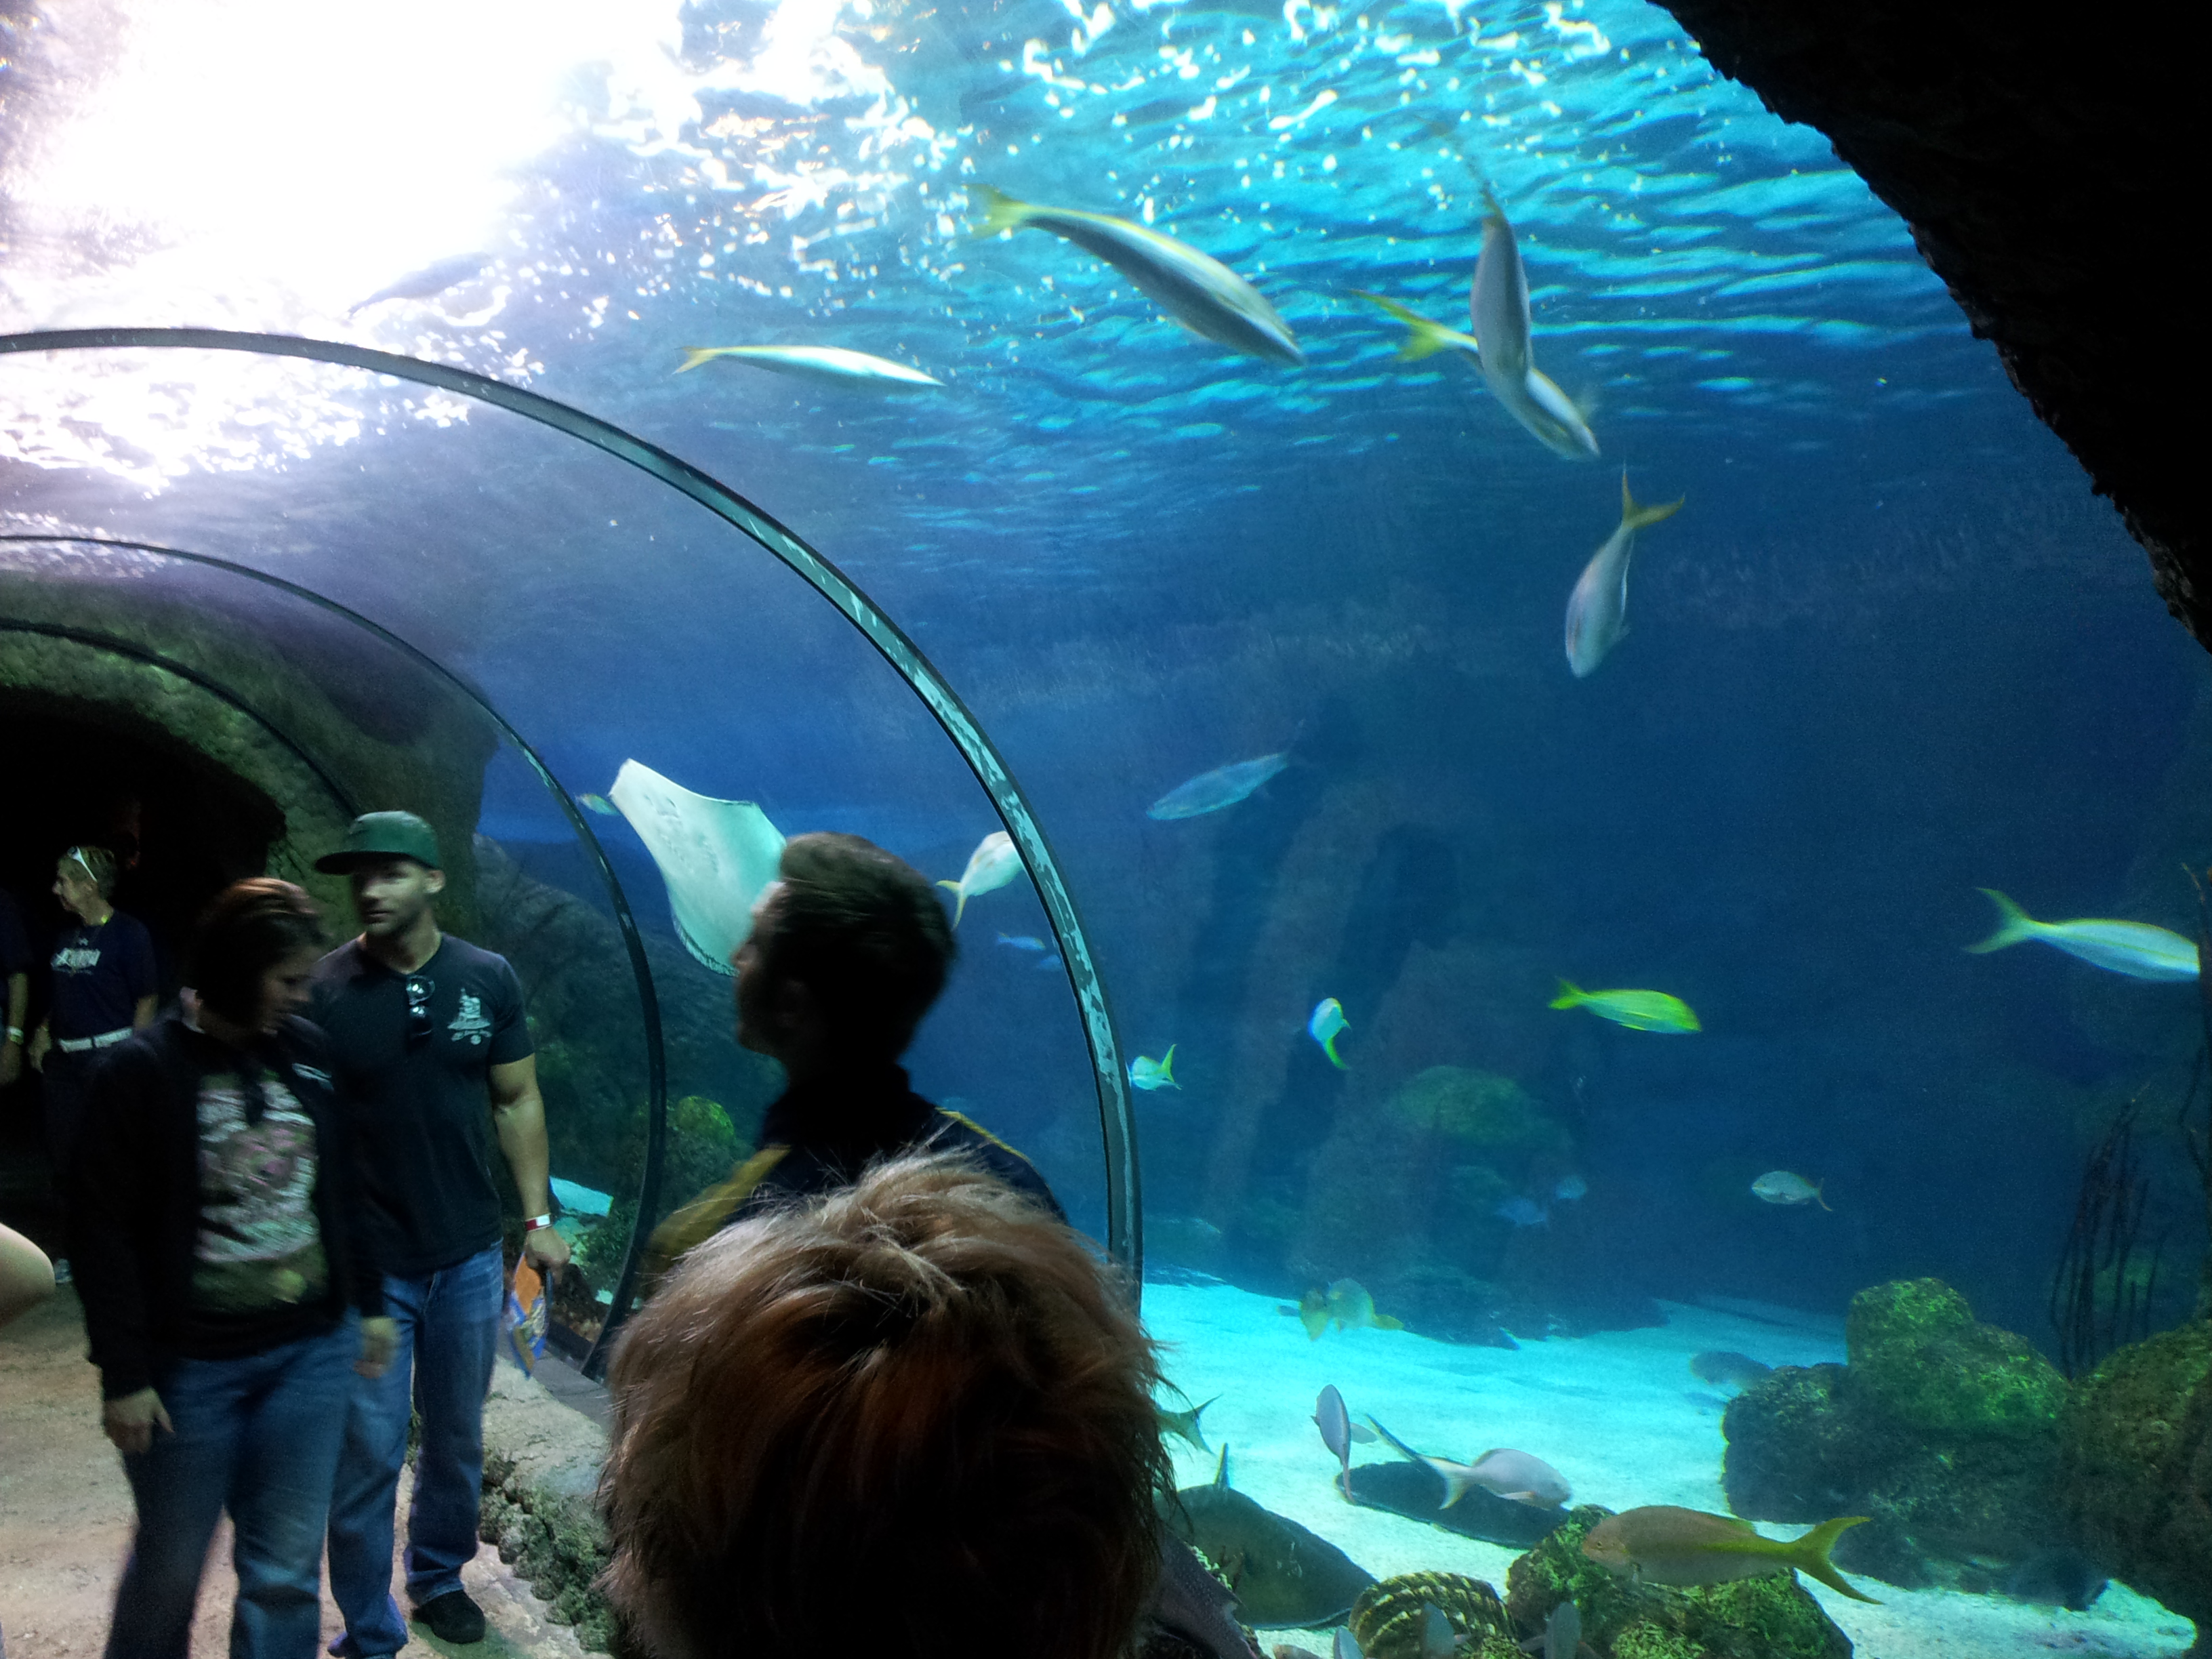 The Denver Aquarium in Photos and Videos